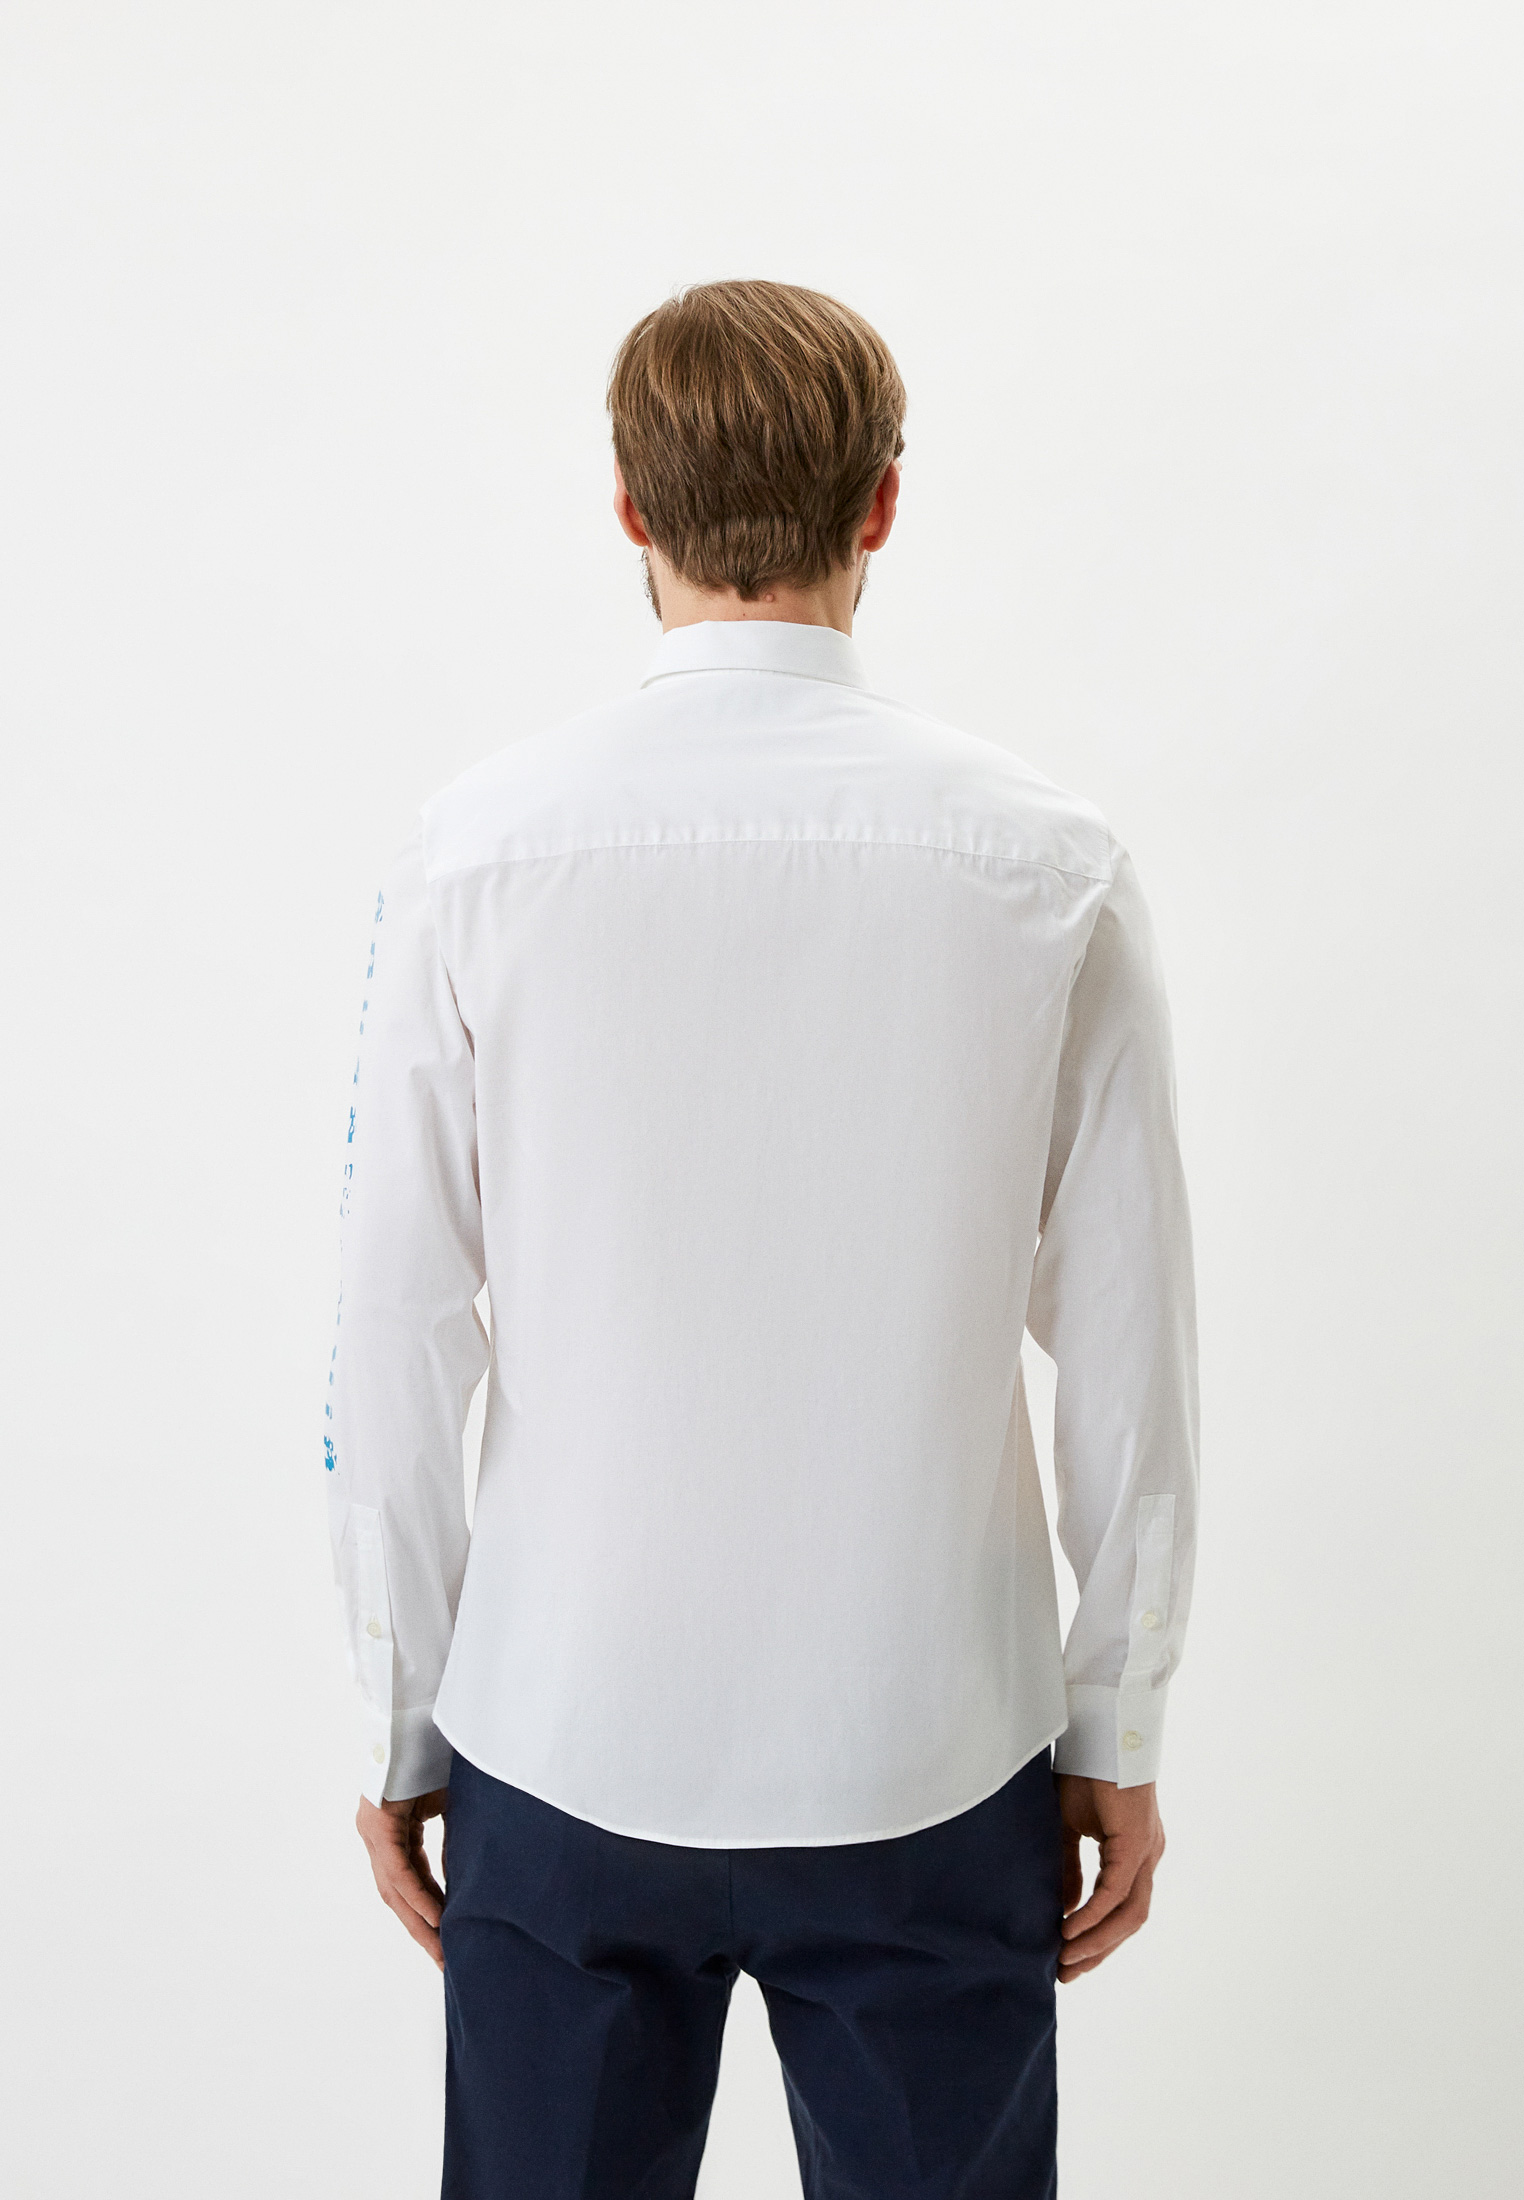 Рубашка с длинным рукавом Bikkembergs (Биккембергс) C C 094 01 S 2931: изображение 3